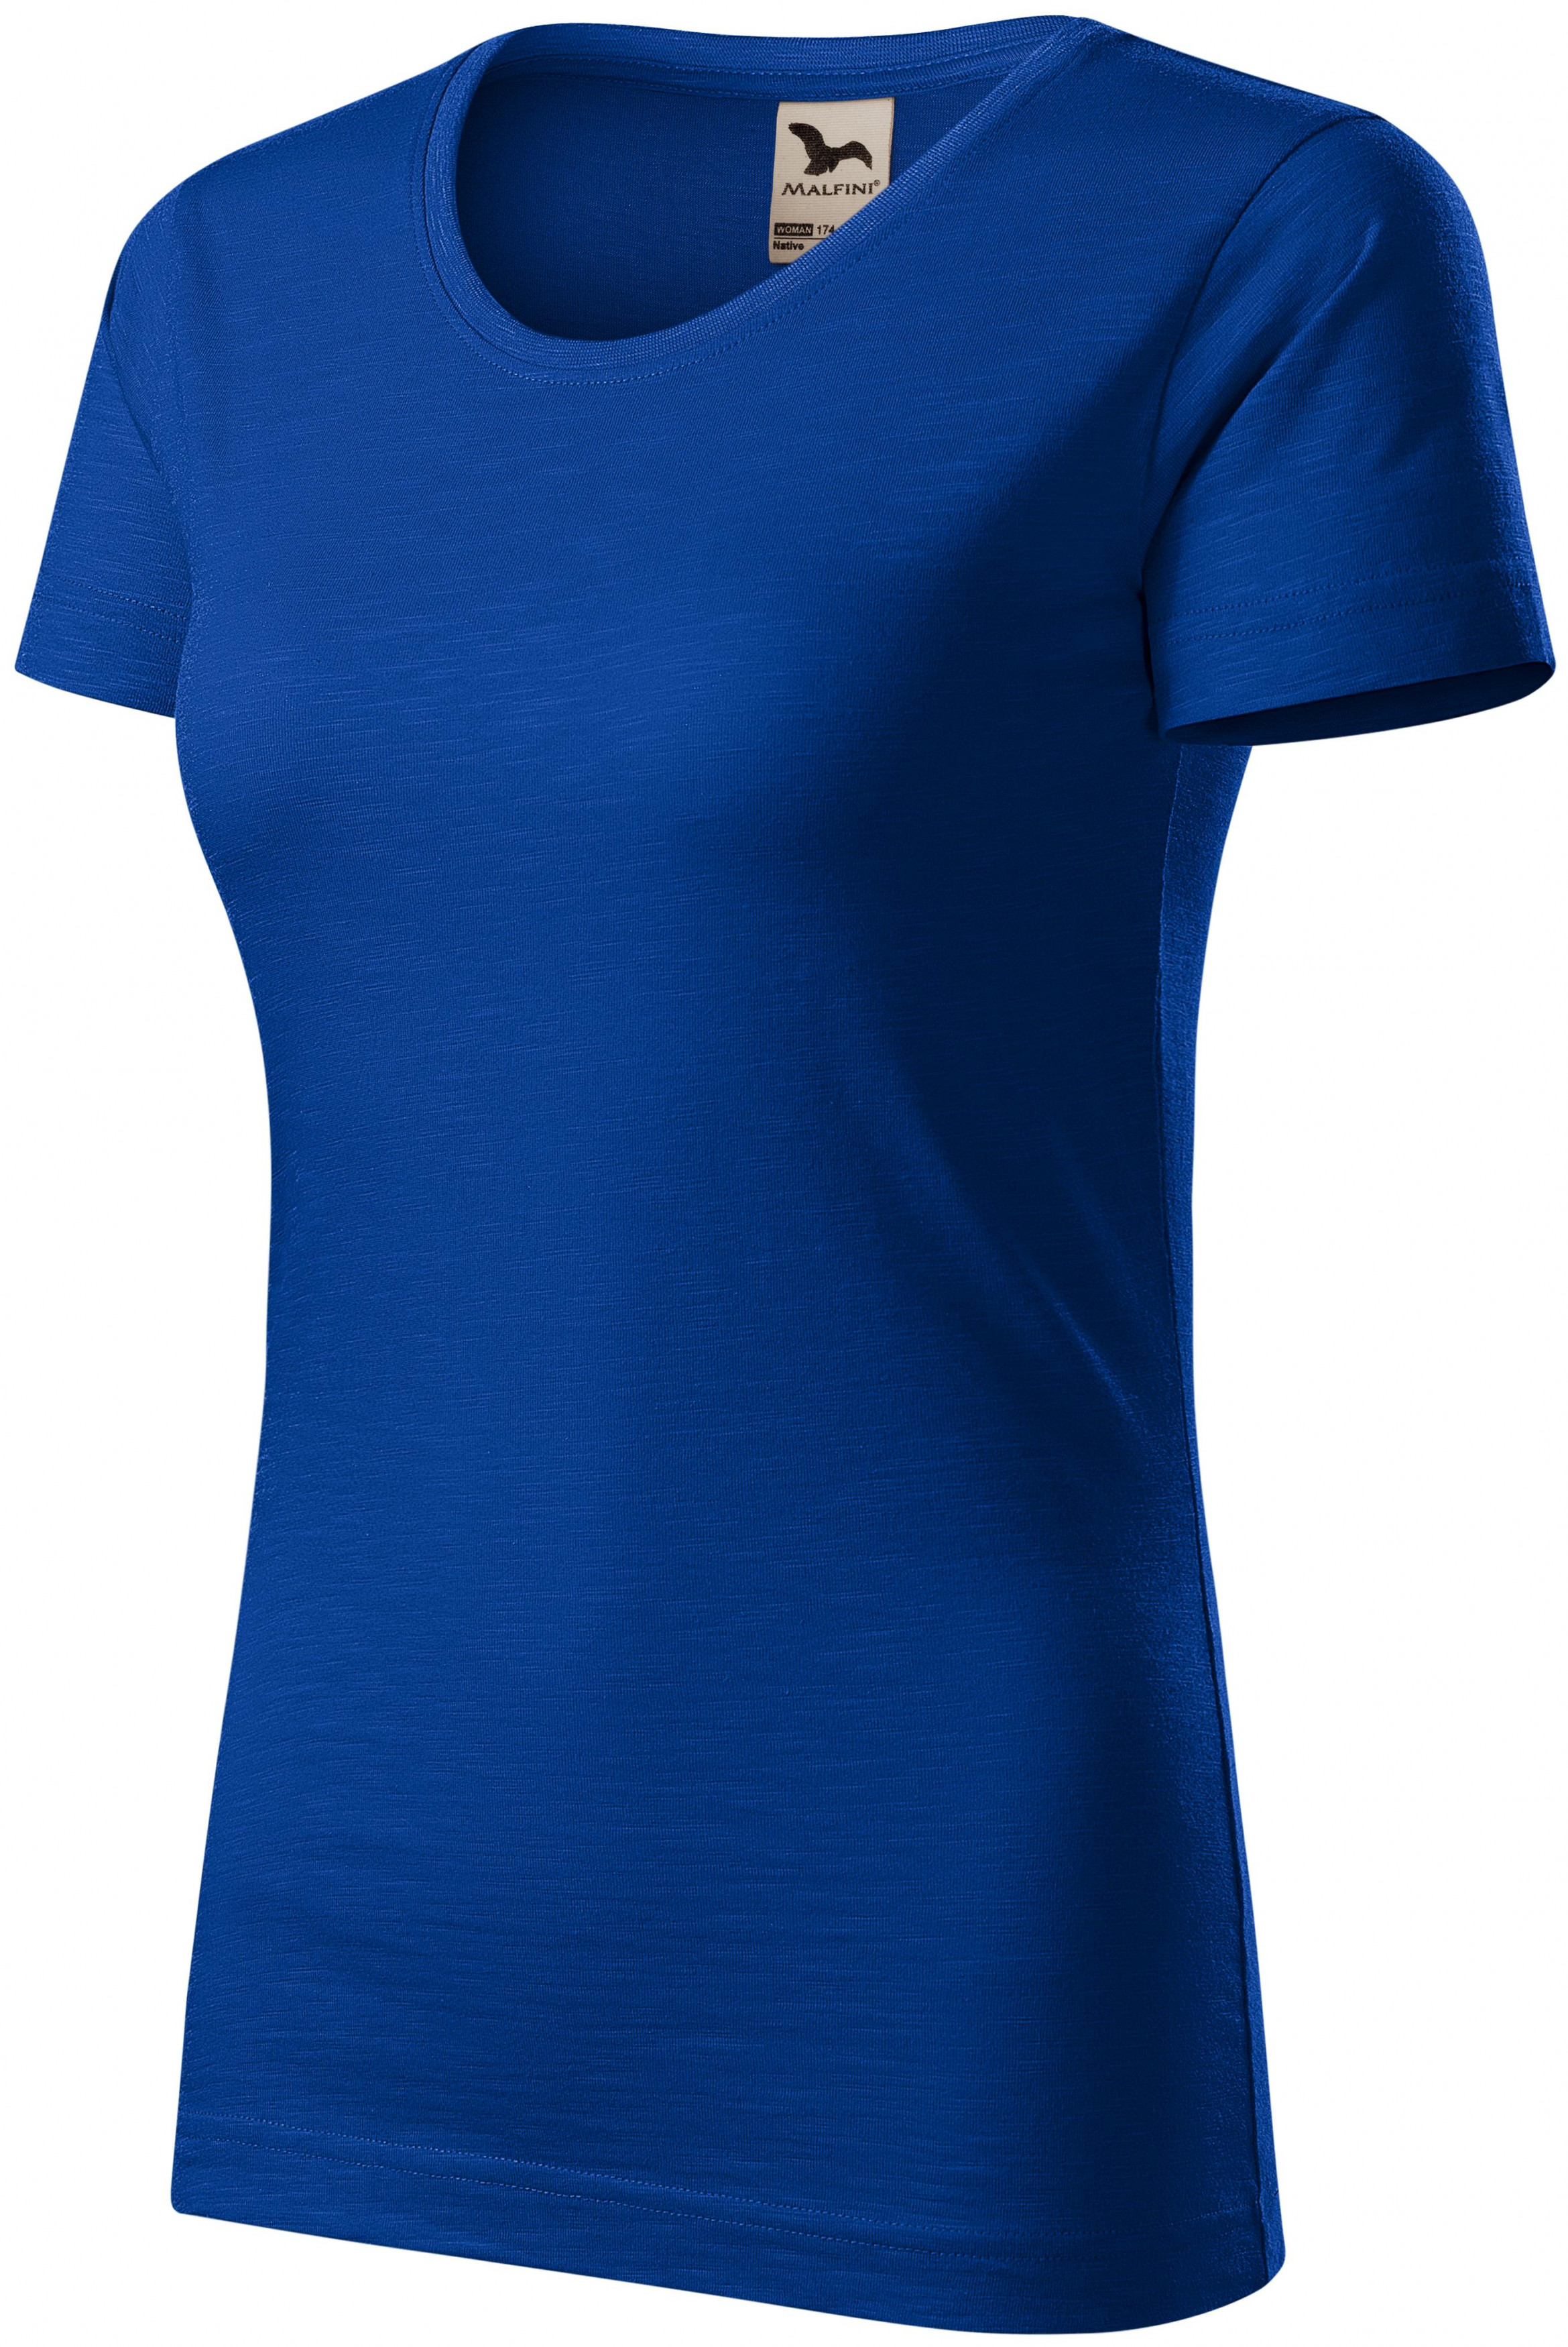 Dámske tričko, štruktúrovaná organická bavlna, kráľovská modrá, XS